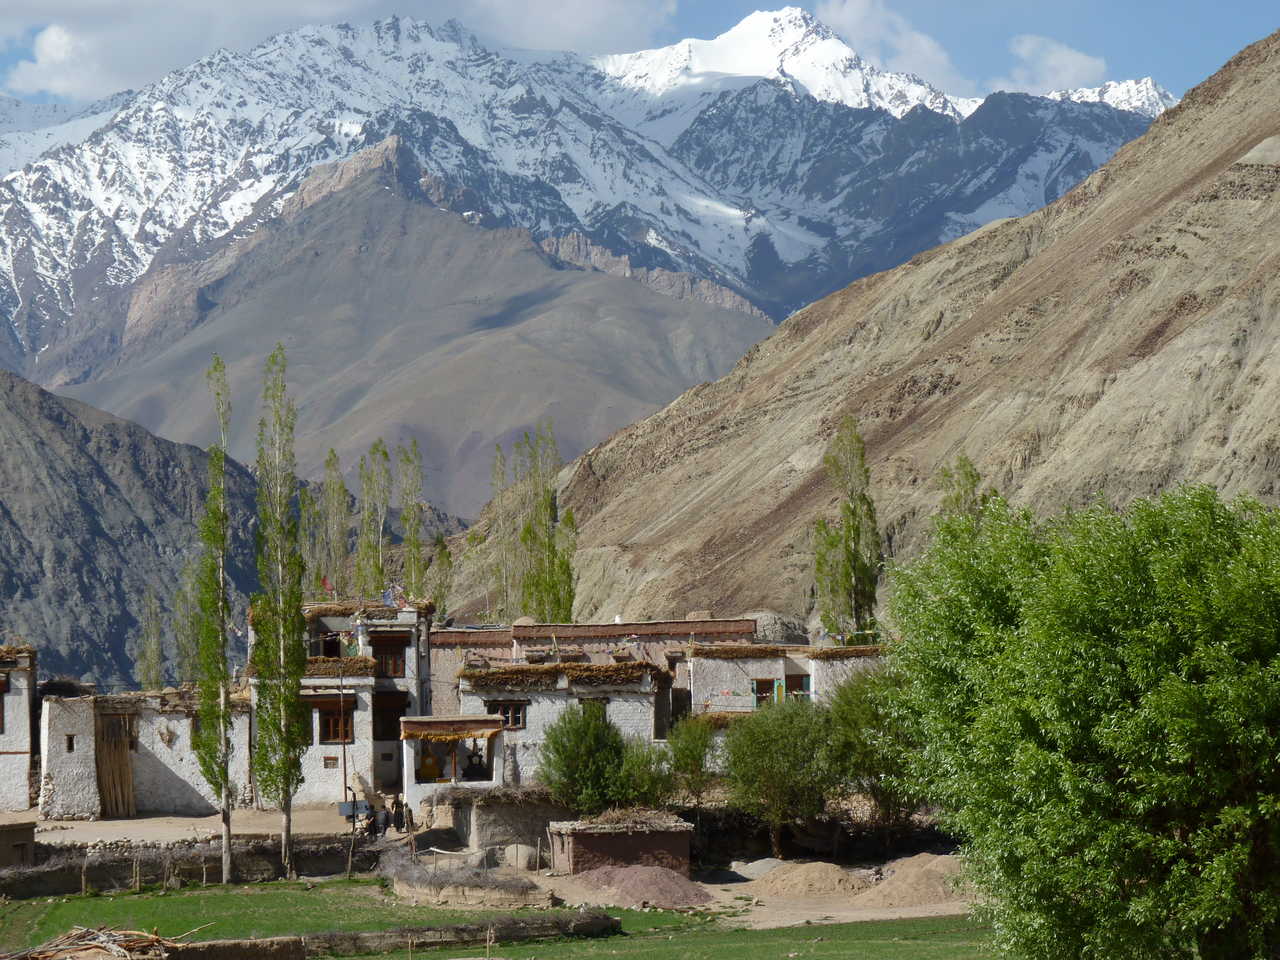 Le village de Yangthang et les montagnes du Zanskar, dans la vallée de Sham, en Inde Himalayenne